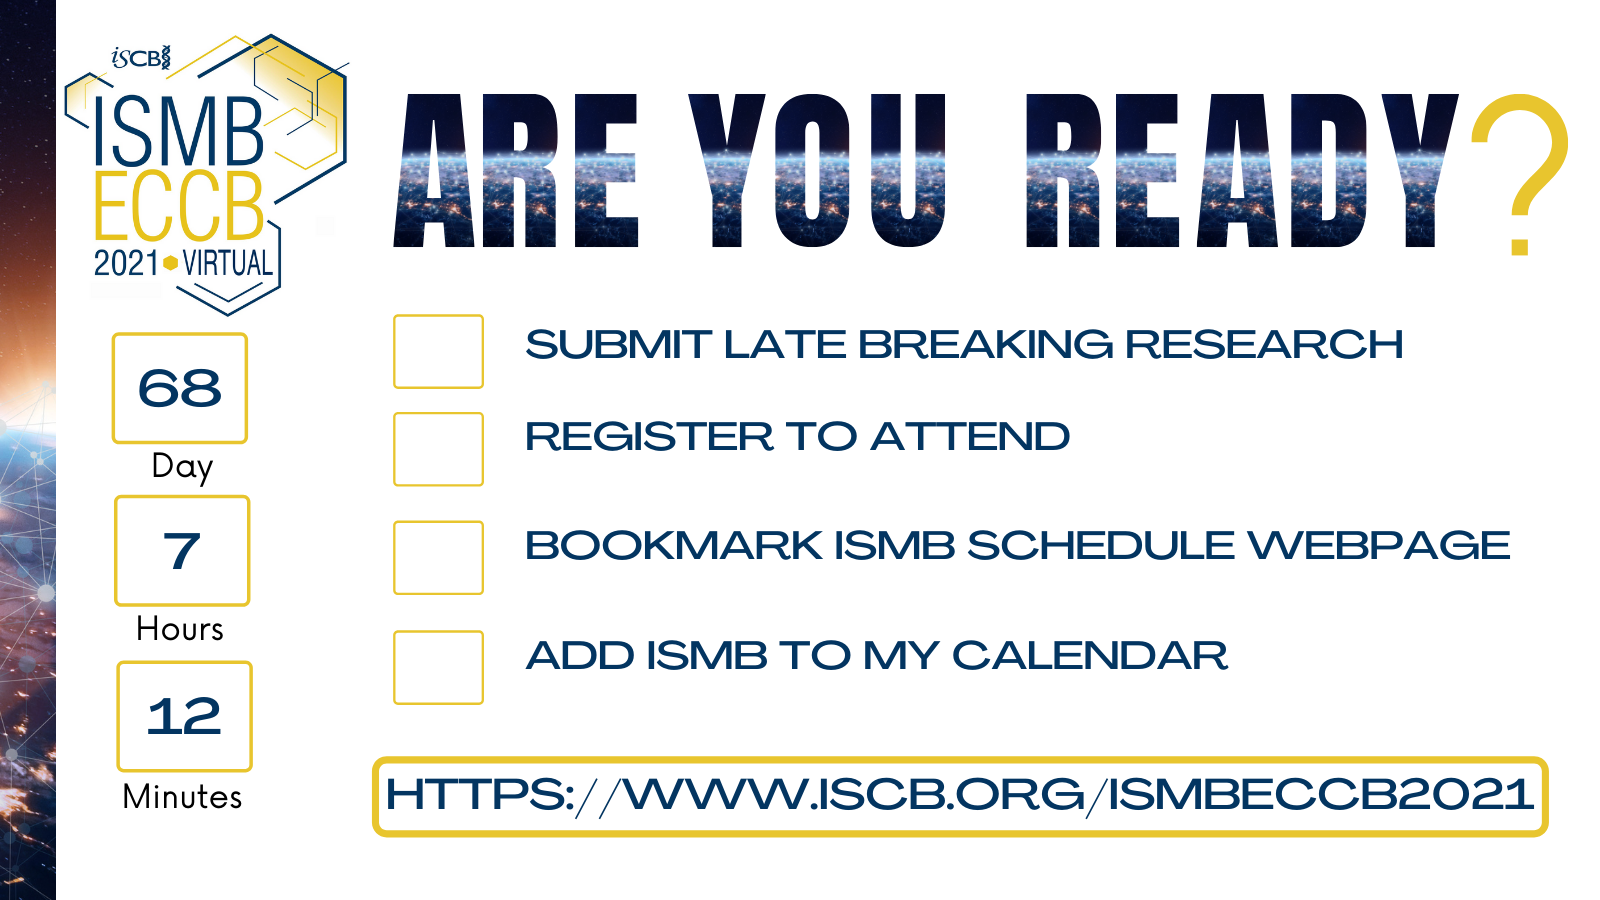 ISMB/ECCB 2021 Registration Open - Register Today!